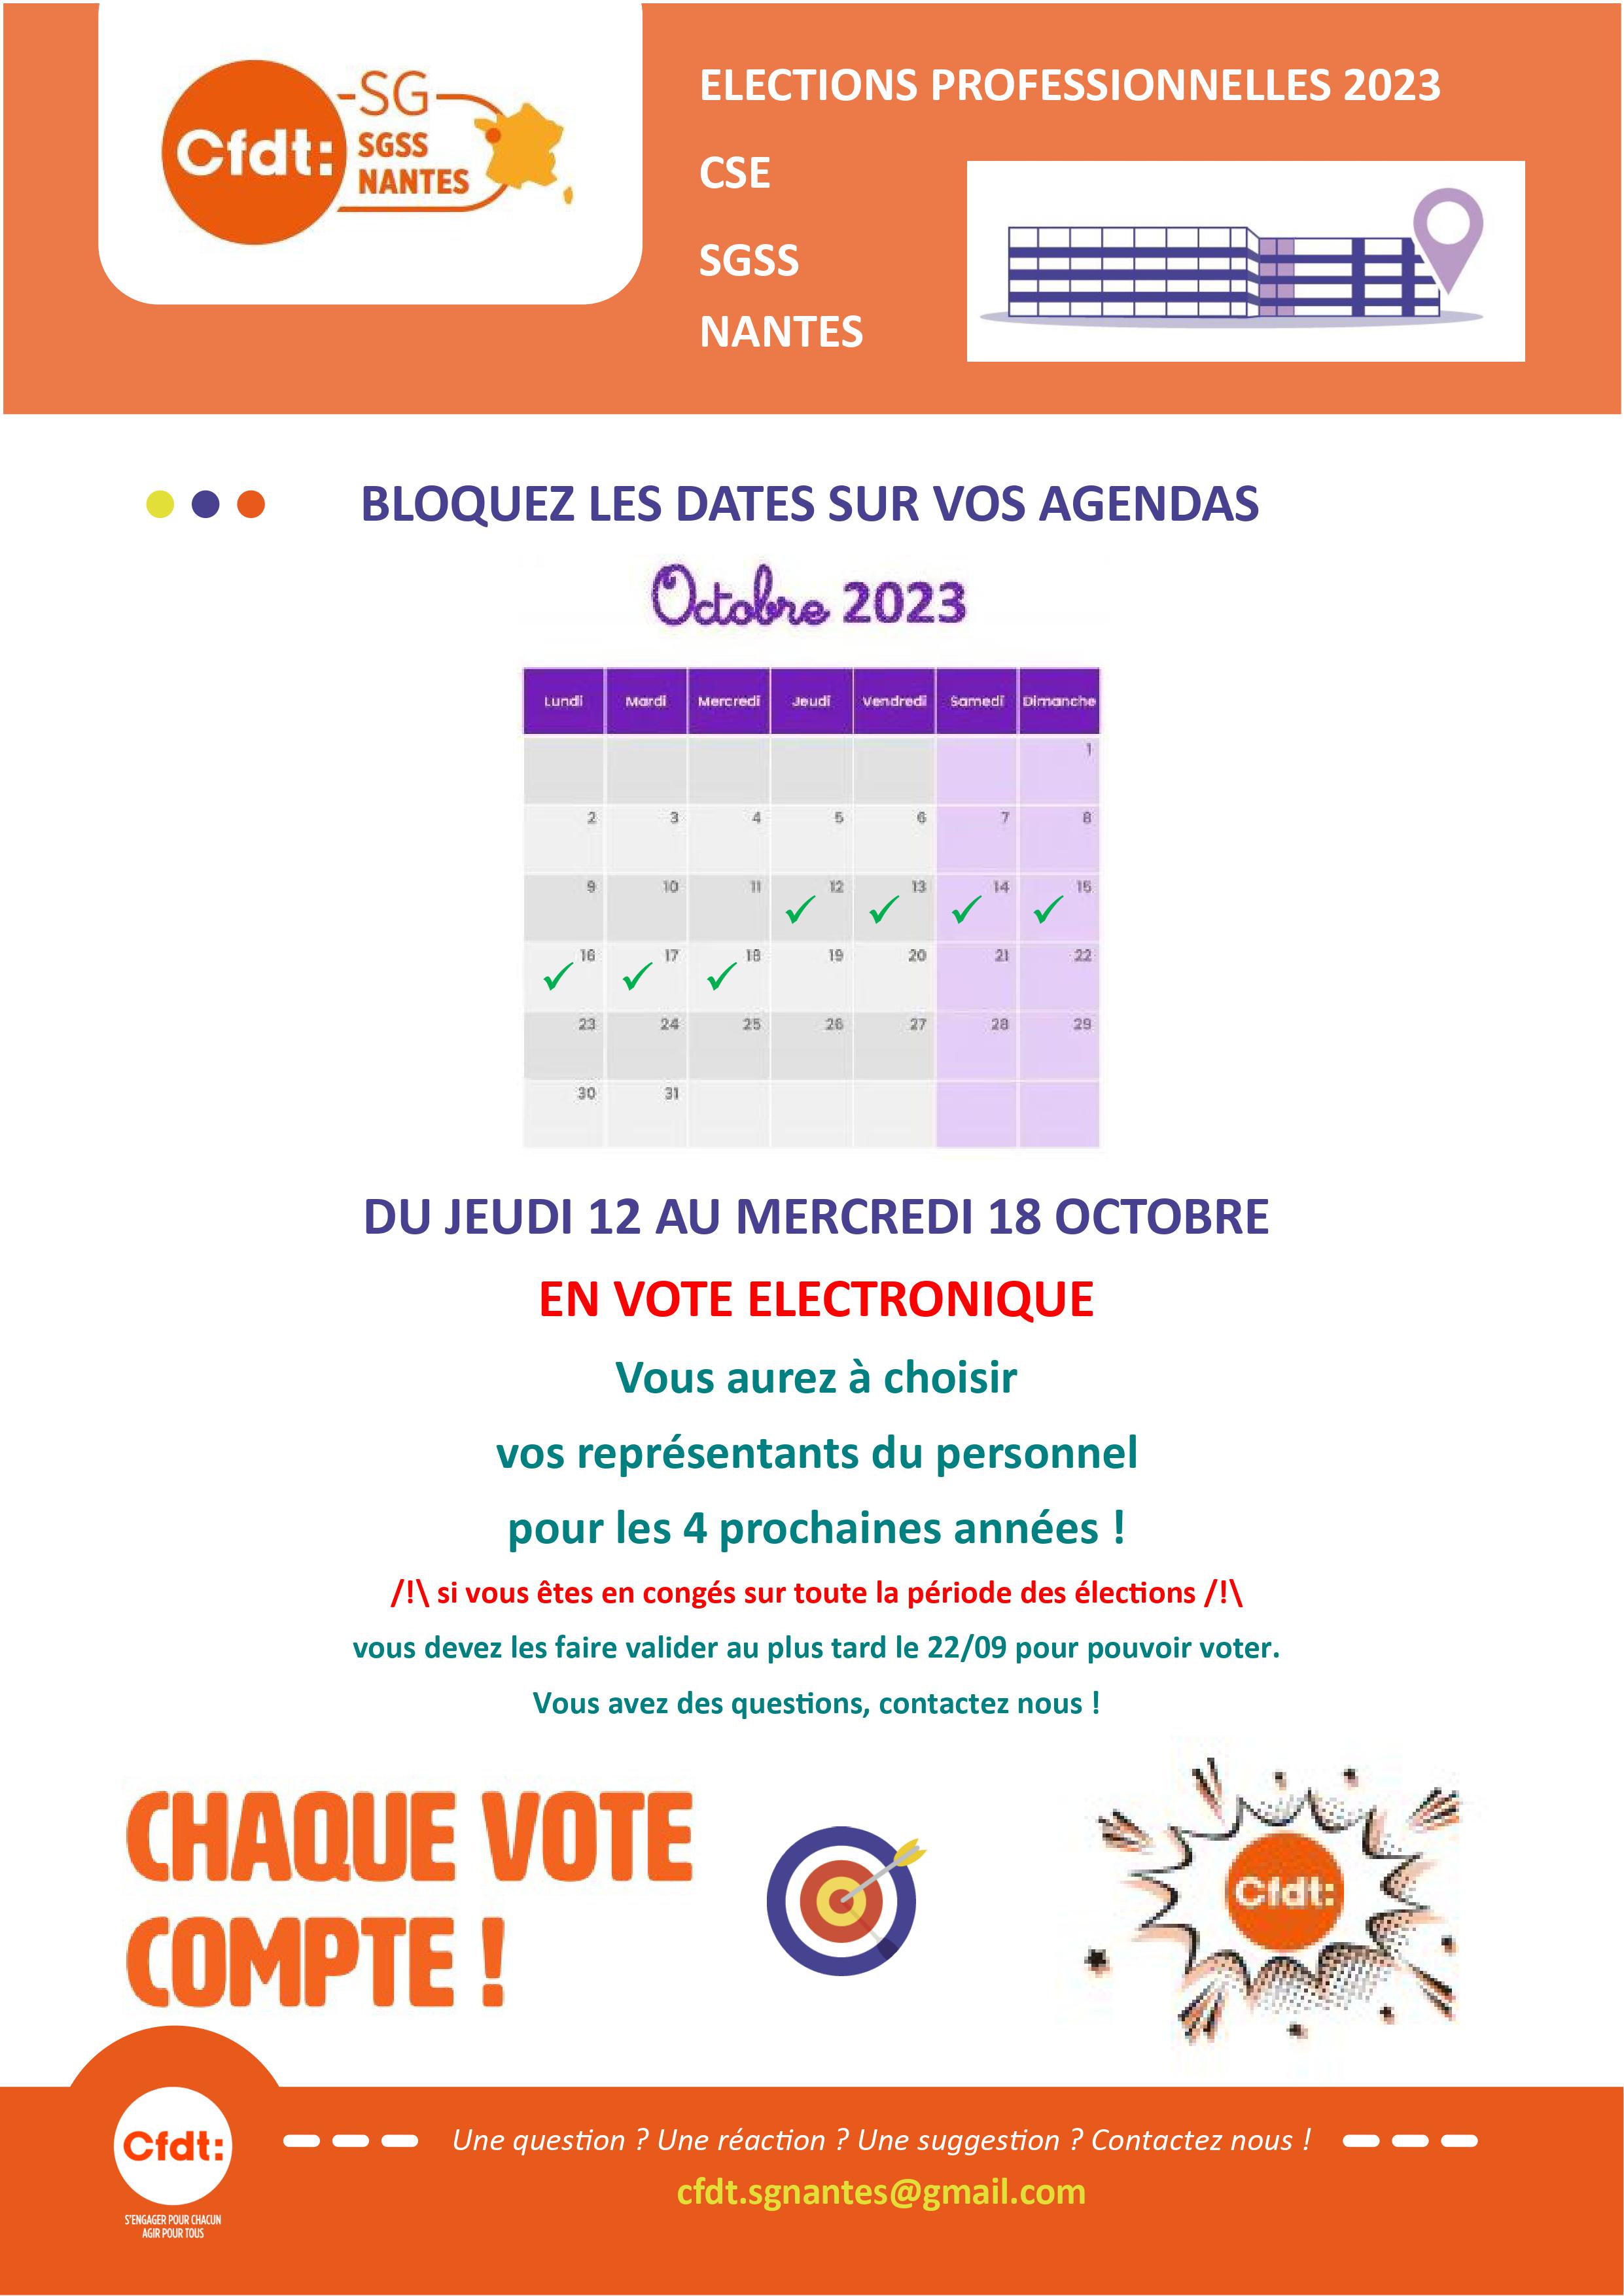 Annonce des dates d'élection du CSE à SGSS Nantes du 12 au 18 octobre 2023